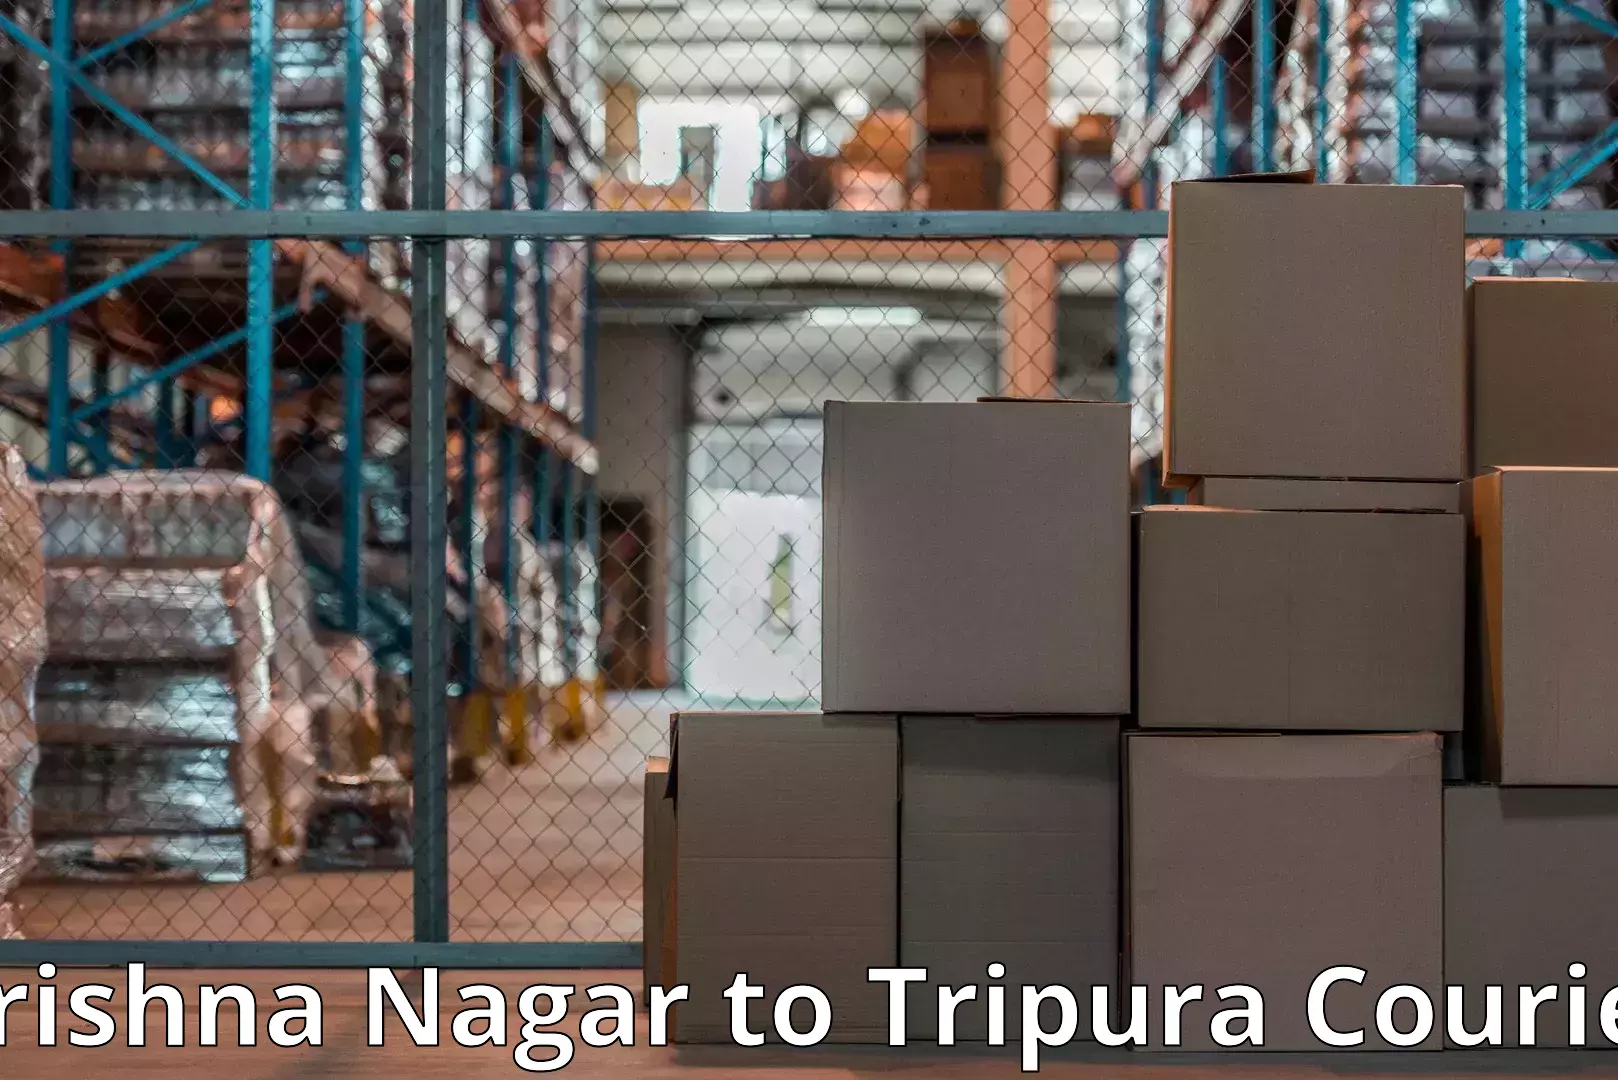 Efficient moving company Krishna Nagar to IIIT Agartala